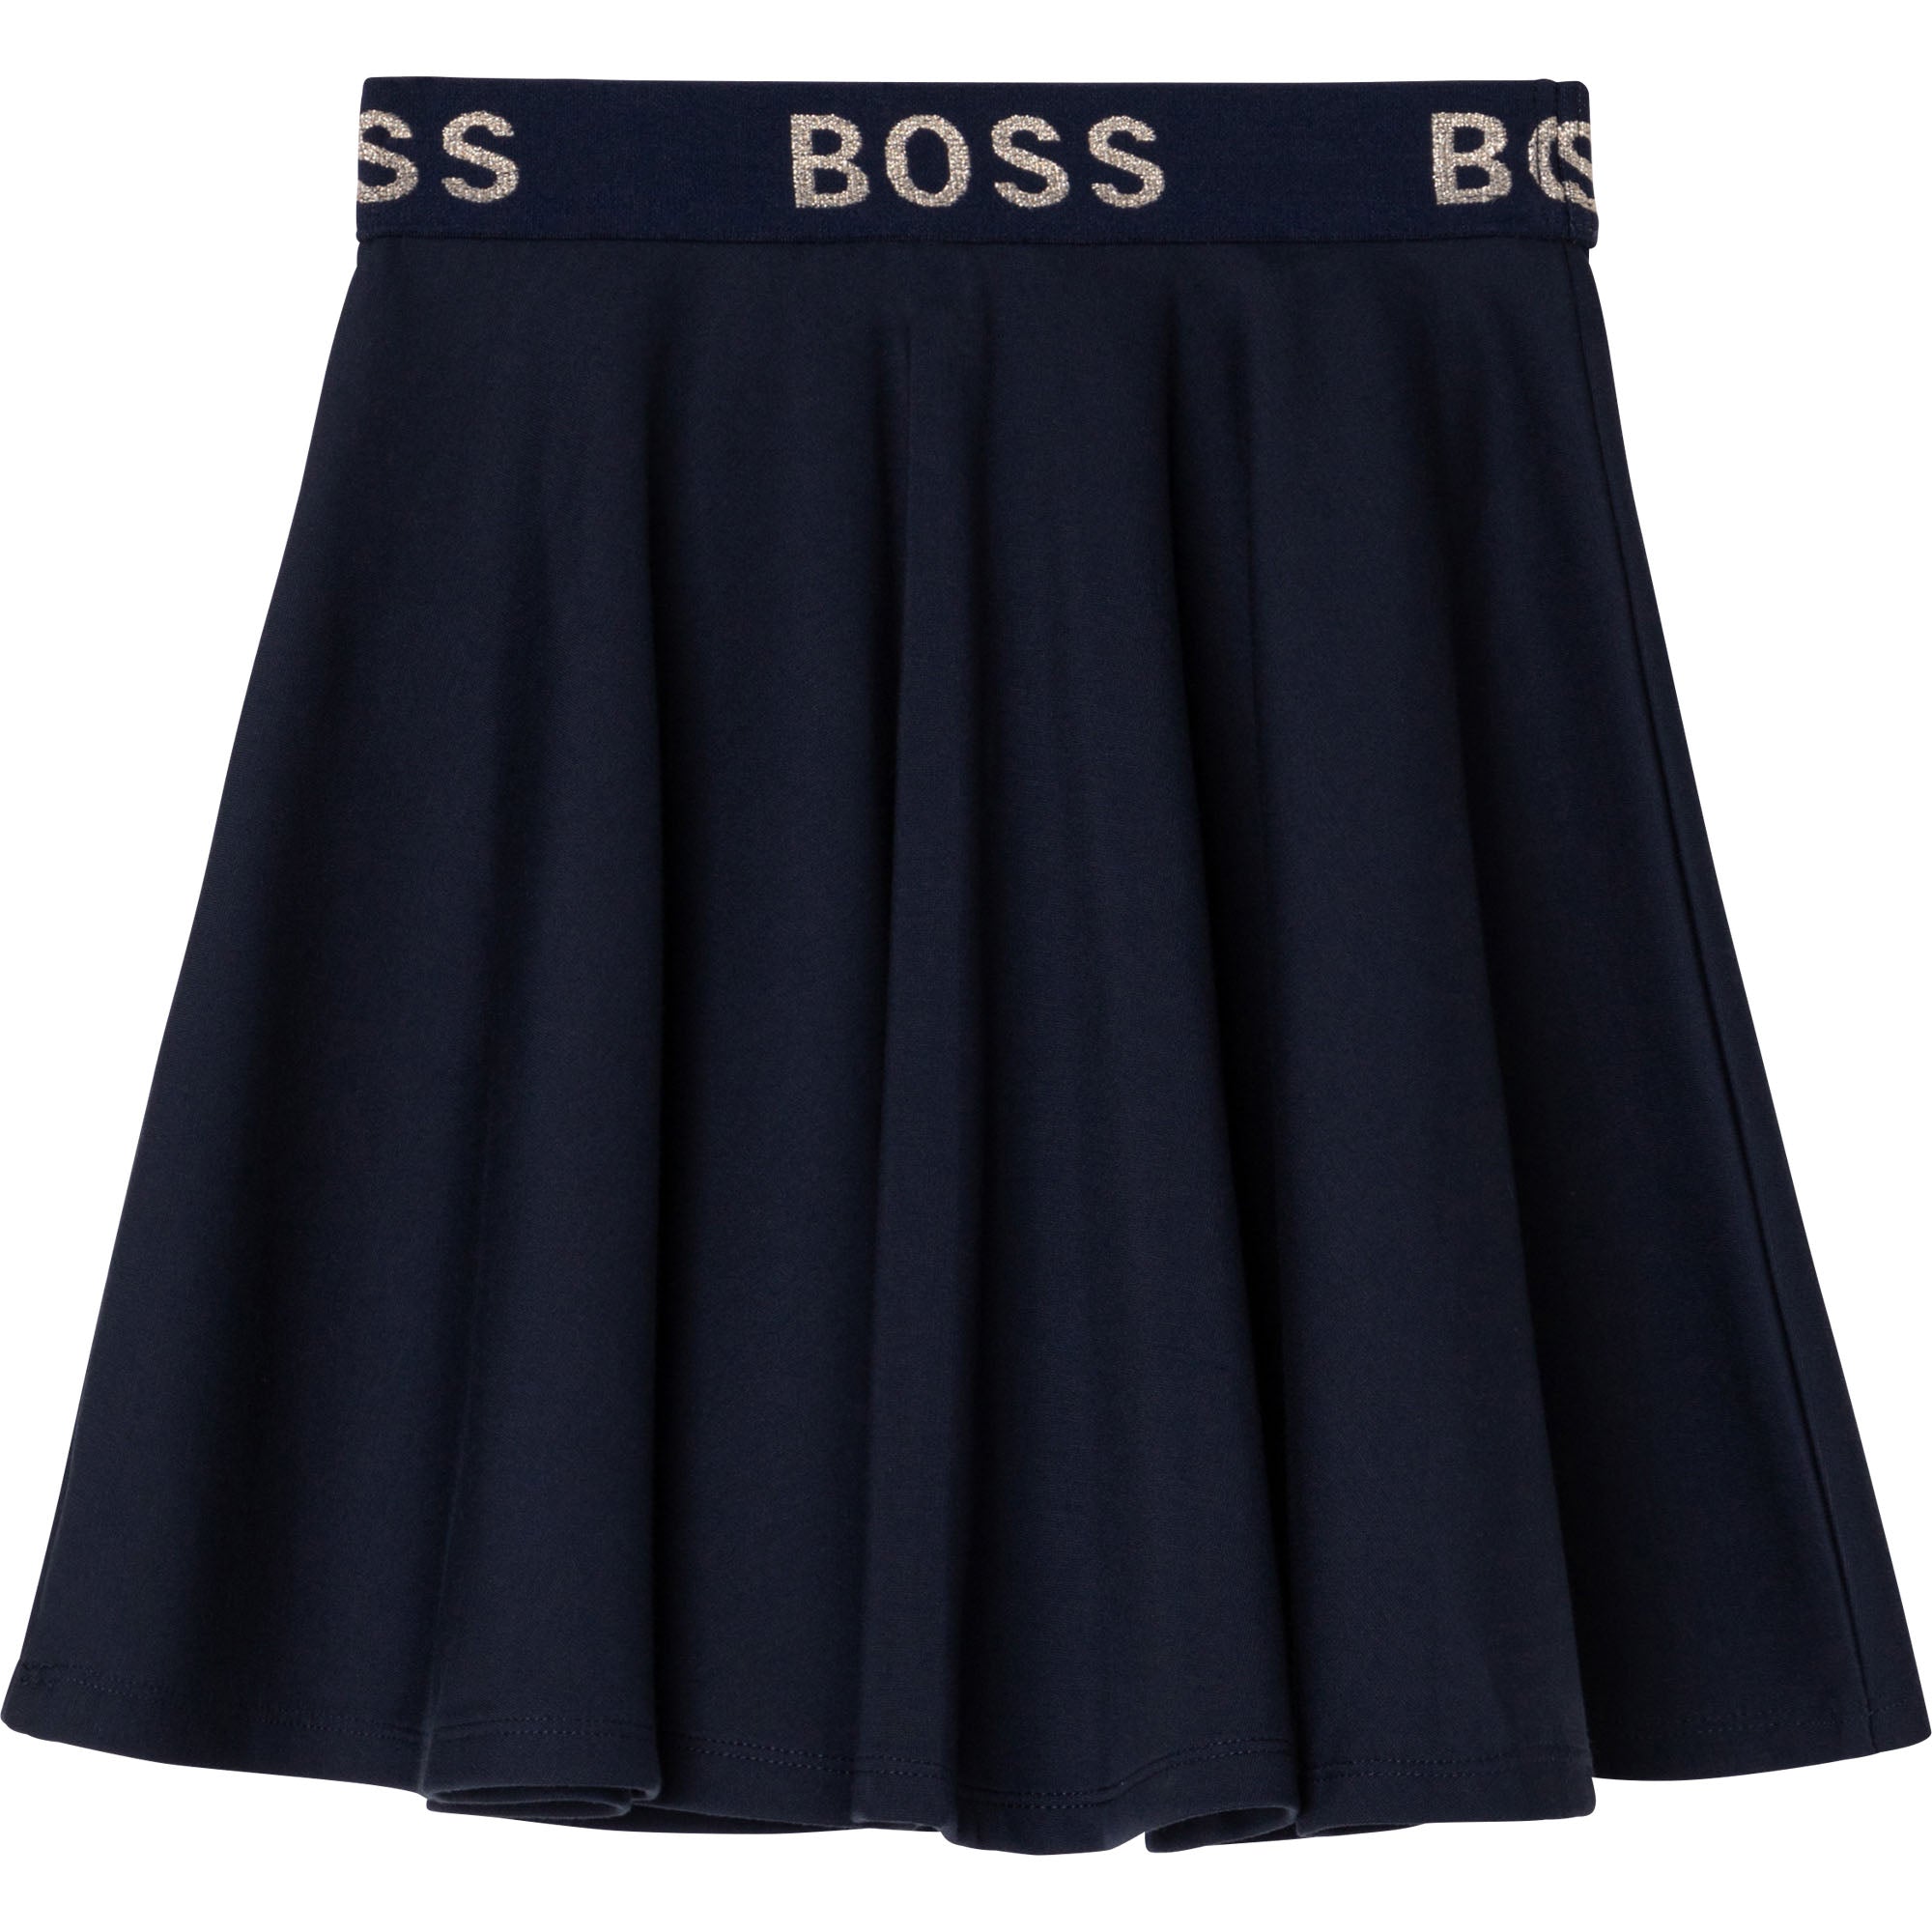 Girls Navy Pleated Skirt